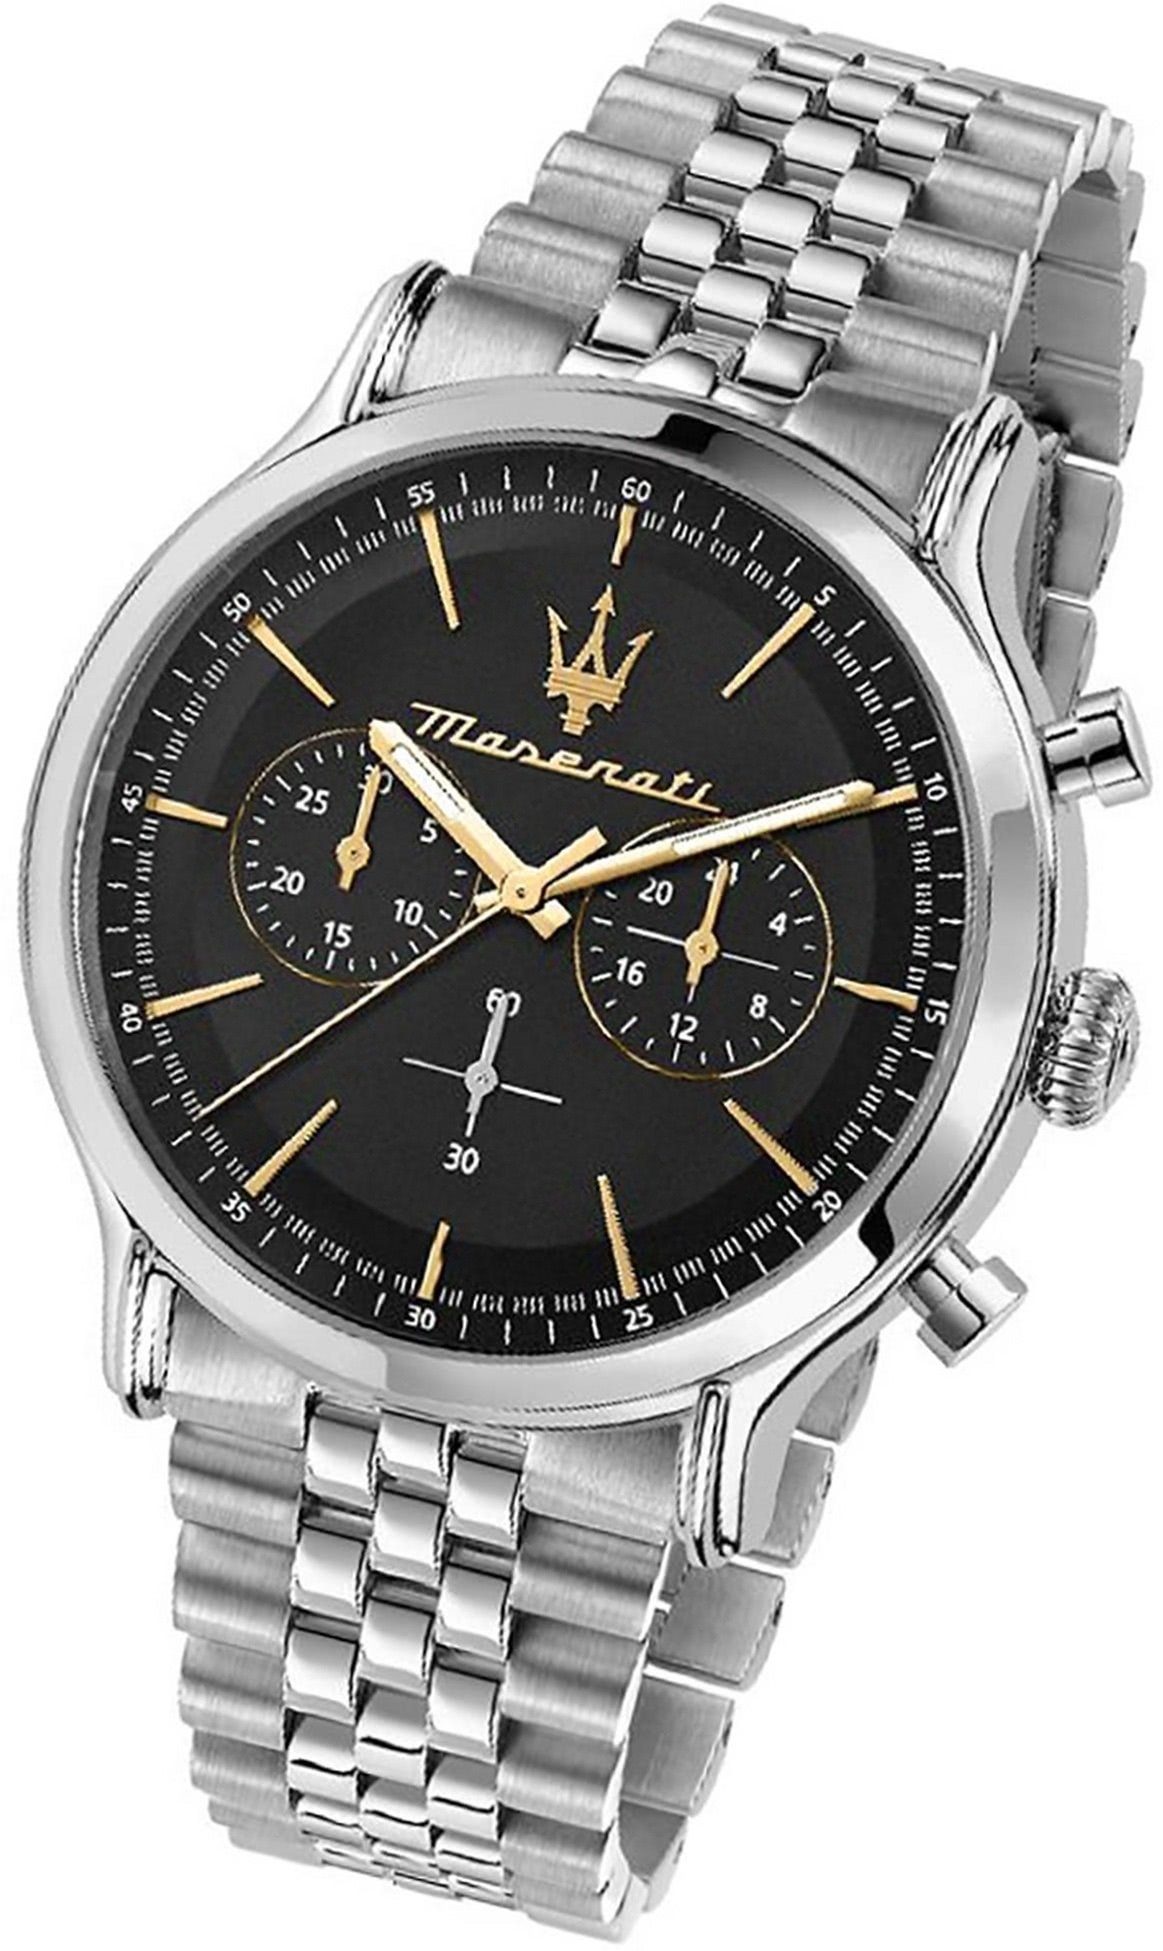 MASERATI Chronograph Maserati Edelstahl Armband-Uhr, Herrenuhr  Edelstahlarmband, rundes Gehäuse, groß (ca. 42mm) schwarz